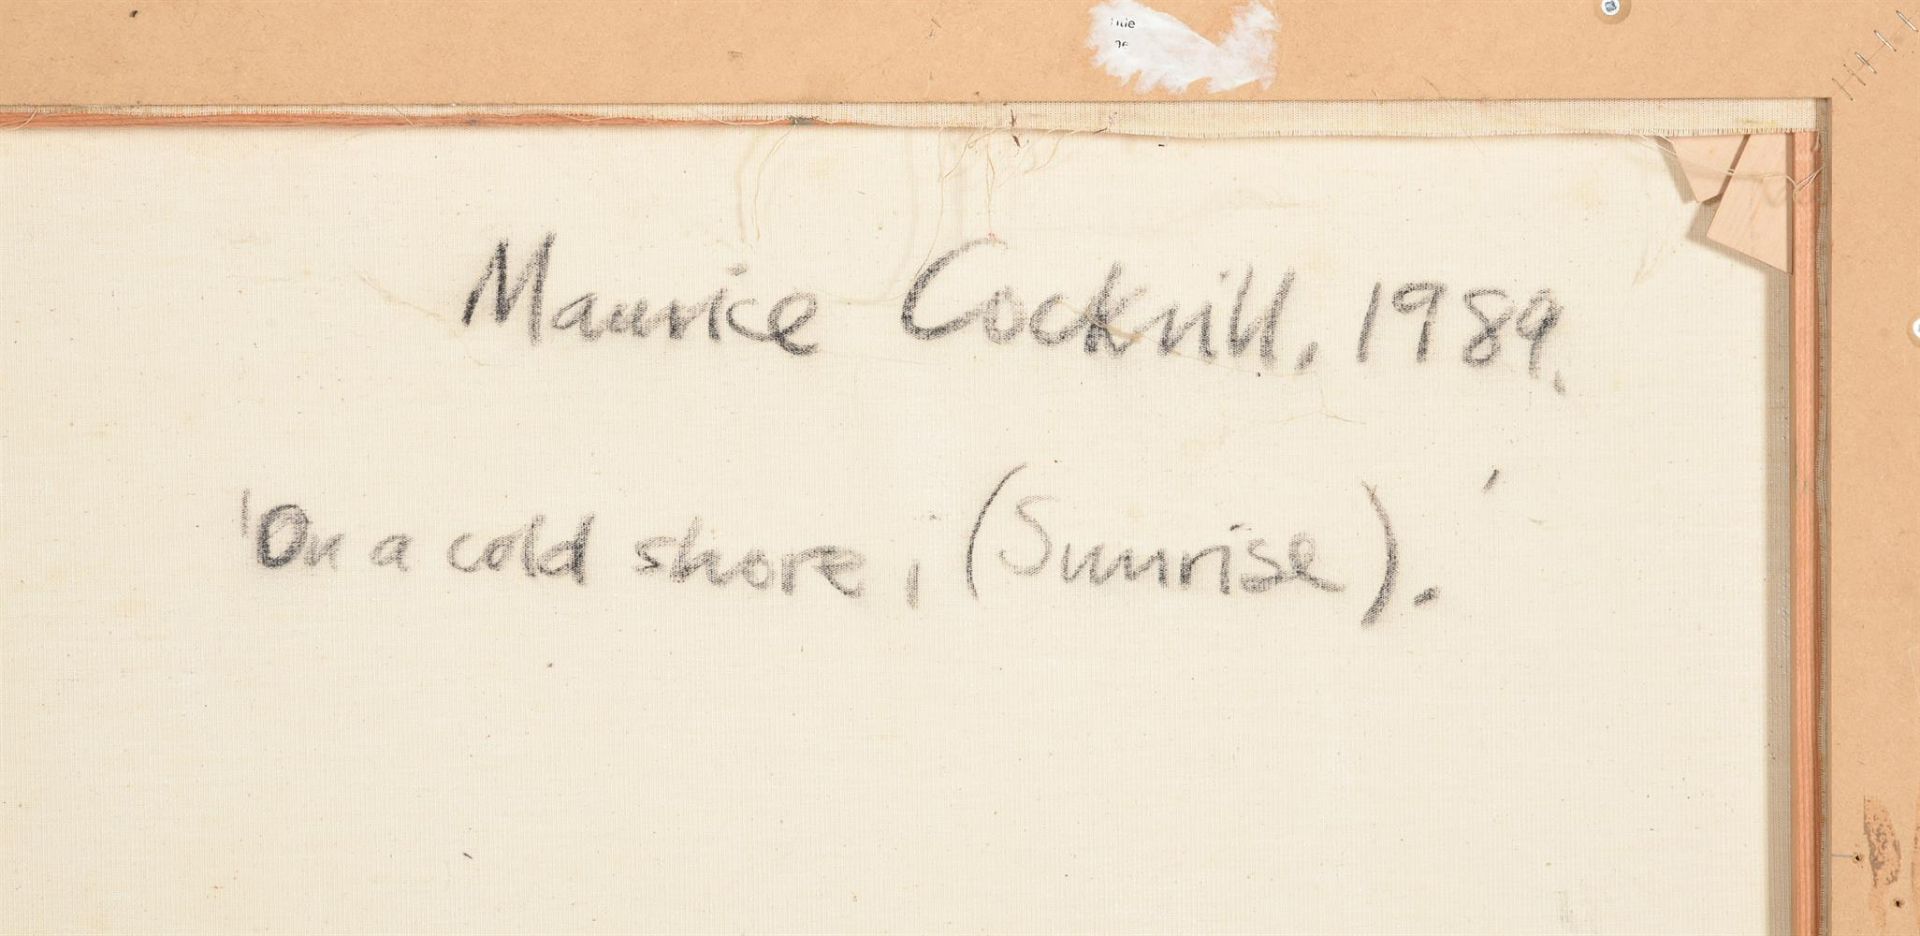 λ MAURICE COCKRILL (BRITISH 1936-2013), ON A COLD SHORE (SUNRISE) - Bild 4 aus 5